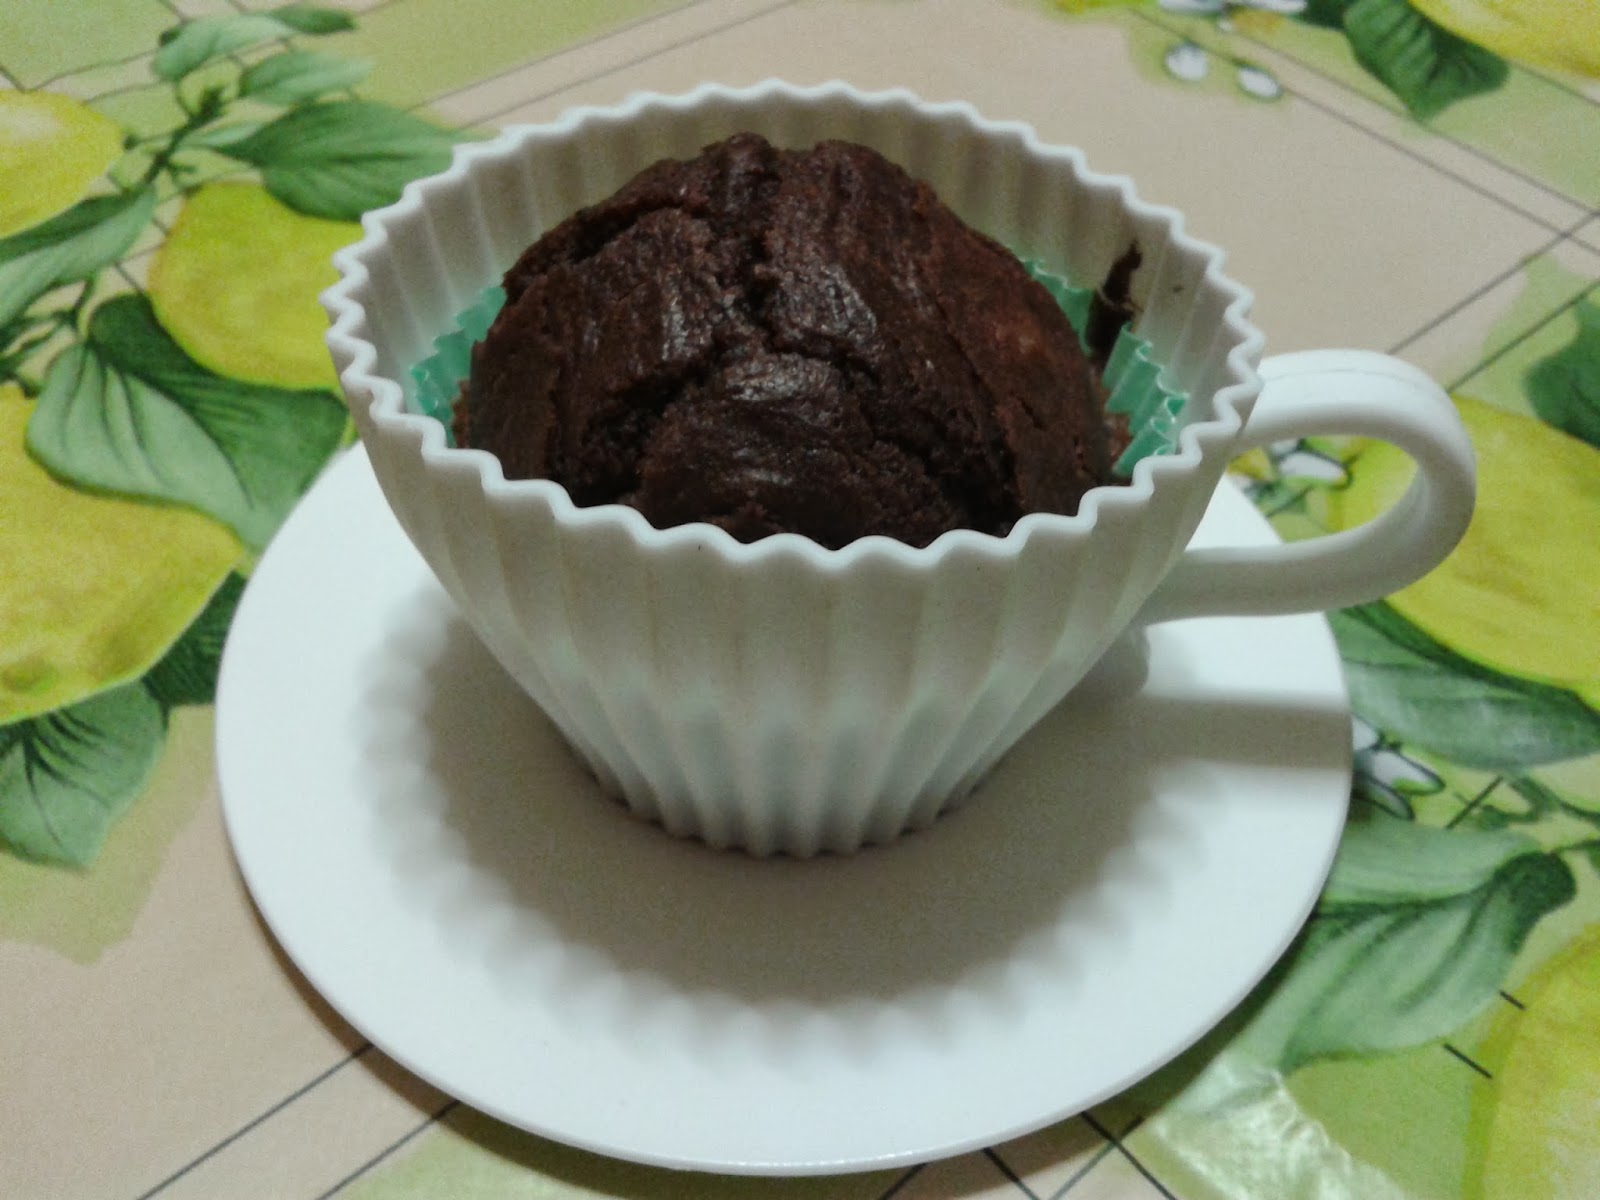 muffin al cacao (ricetta tratta da 